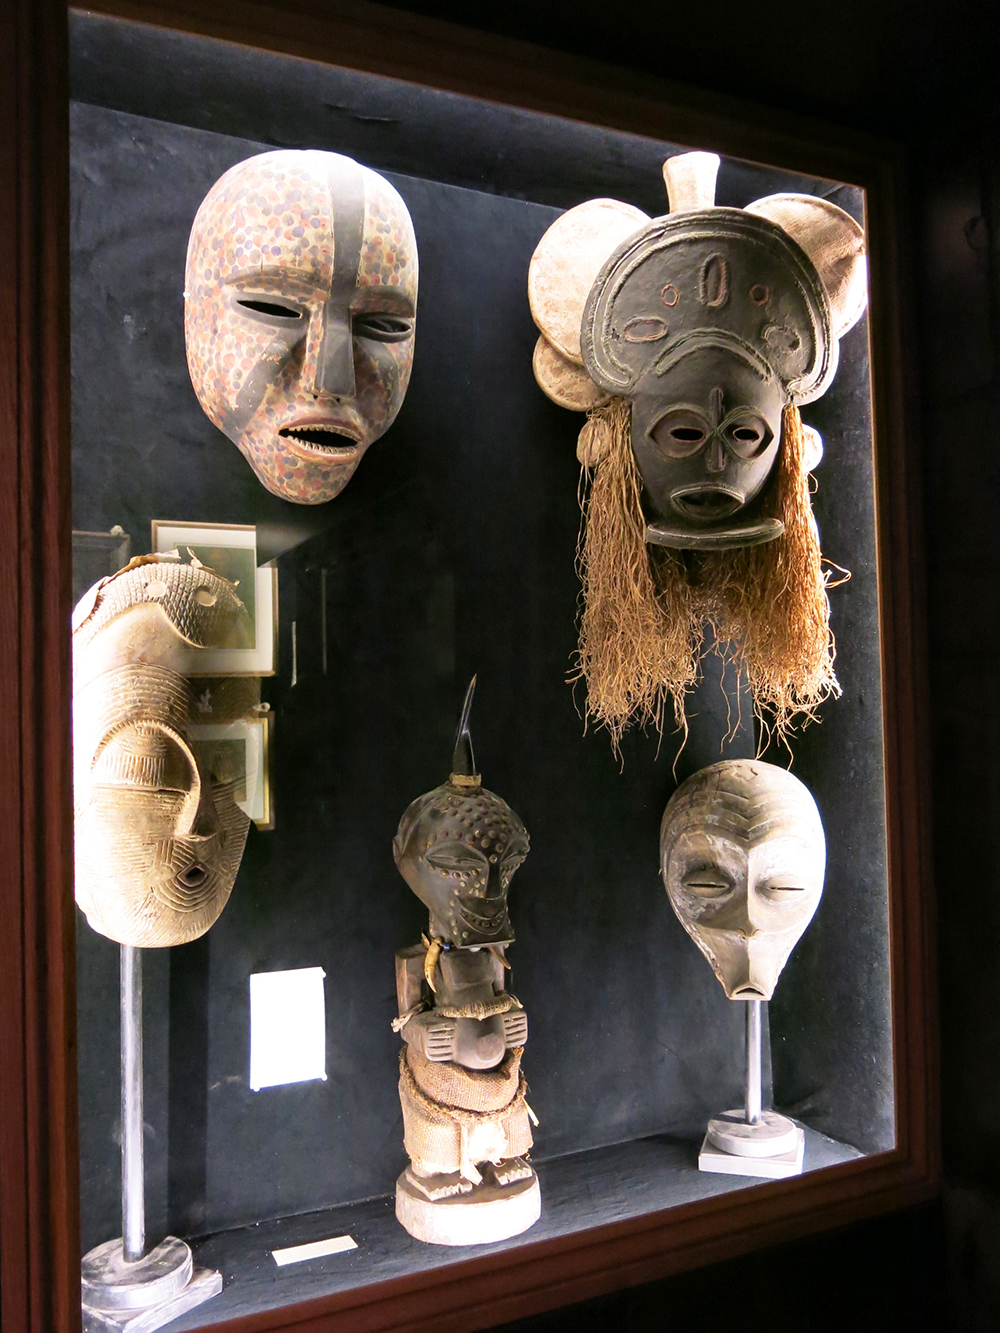 Tribal masks